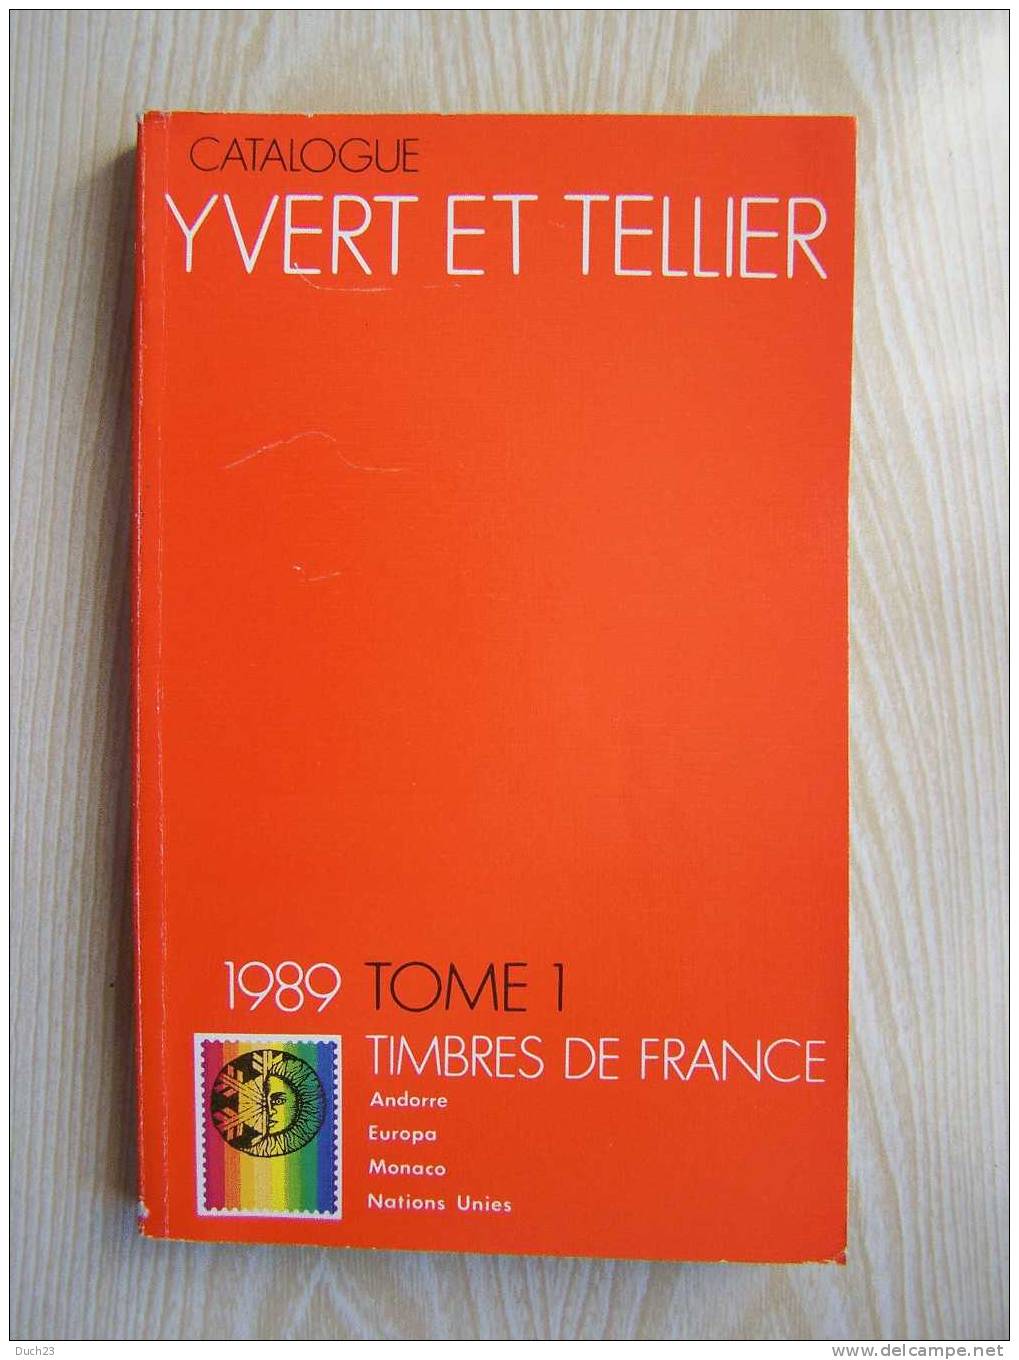 CATALOGUE DE COTATION YVERT ET TELLIER ANNEE 1989 TOME 1 TRES BON ETAT   REF CD - Frankreich